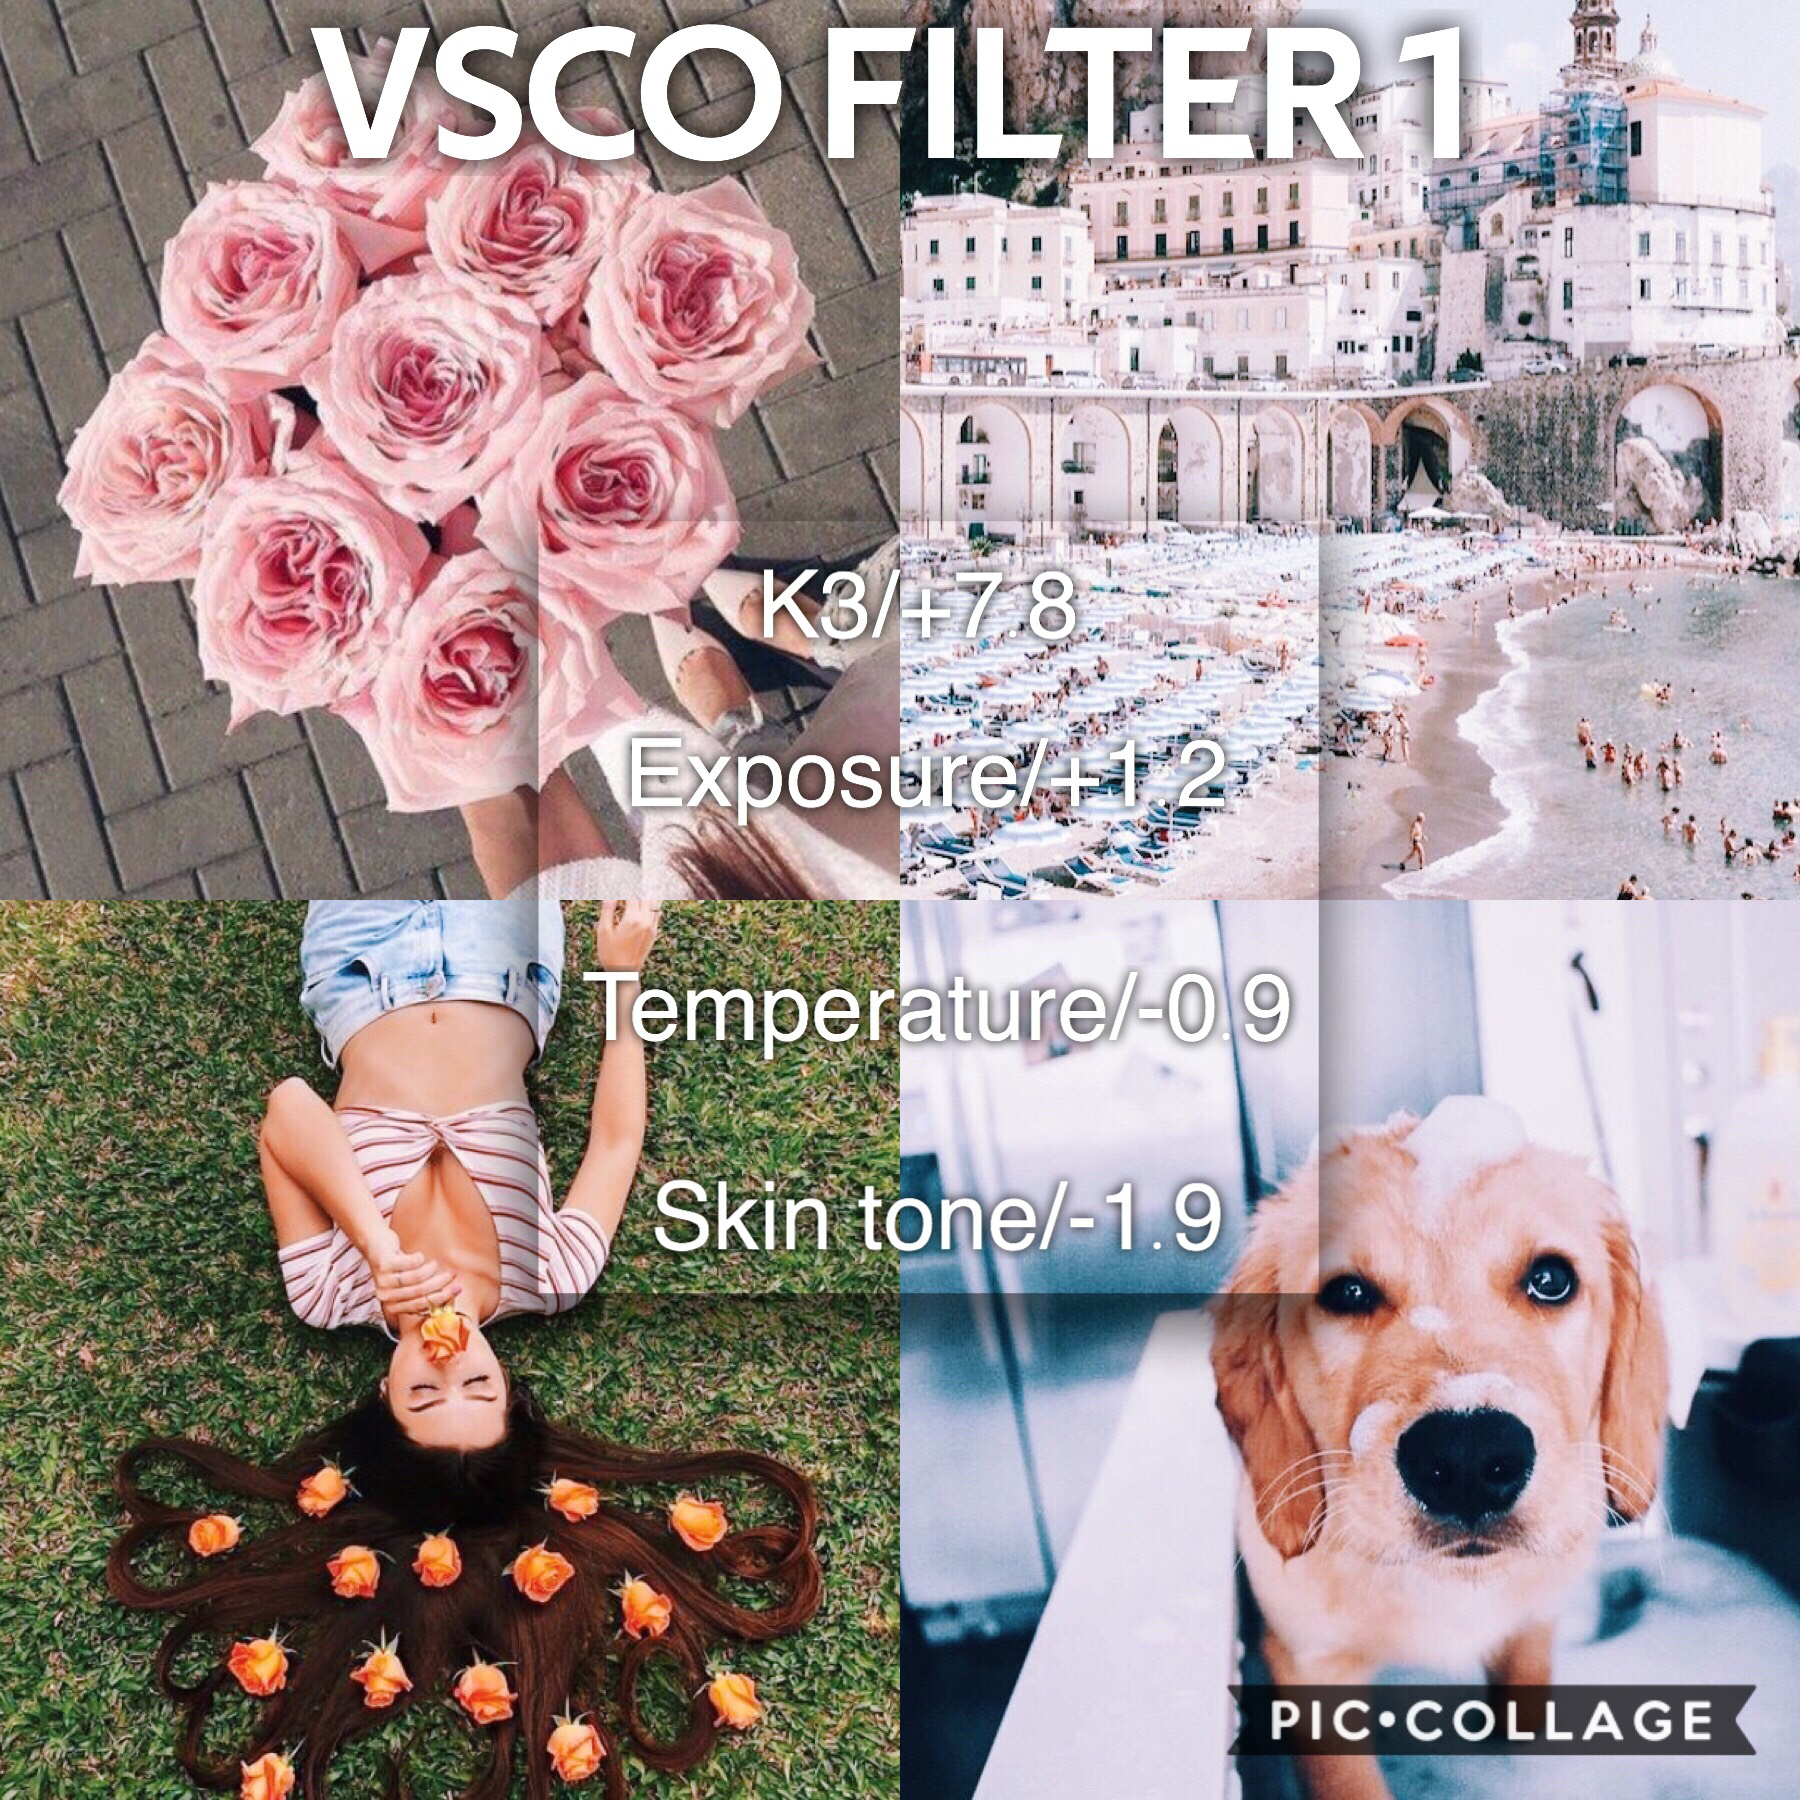 VSCO FILTER 1